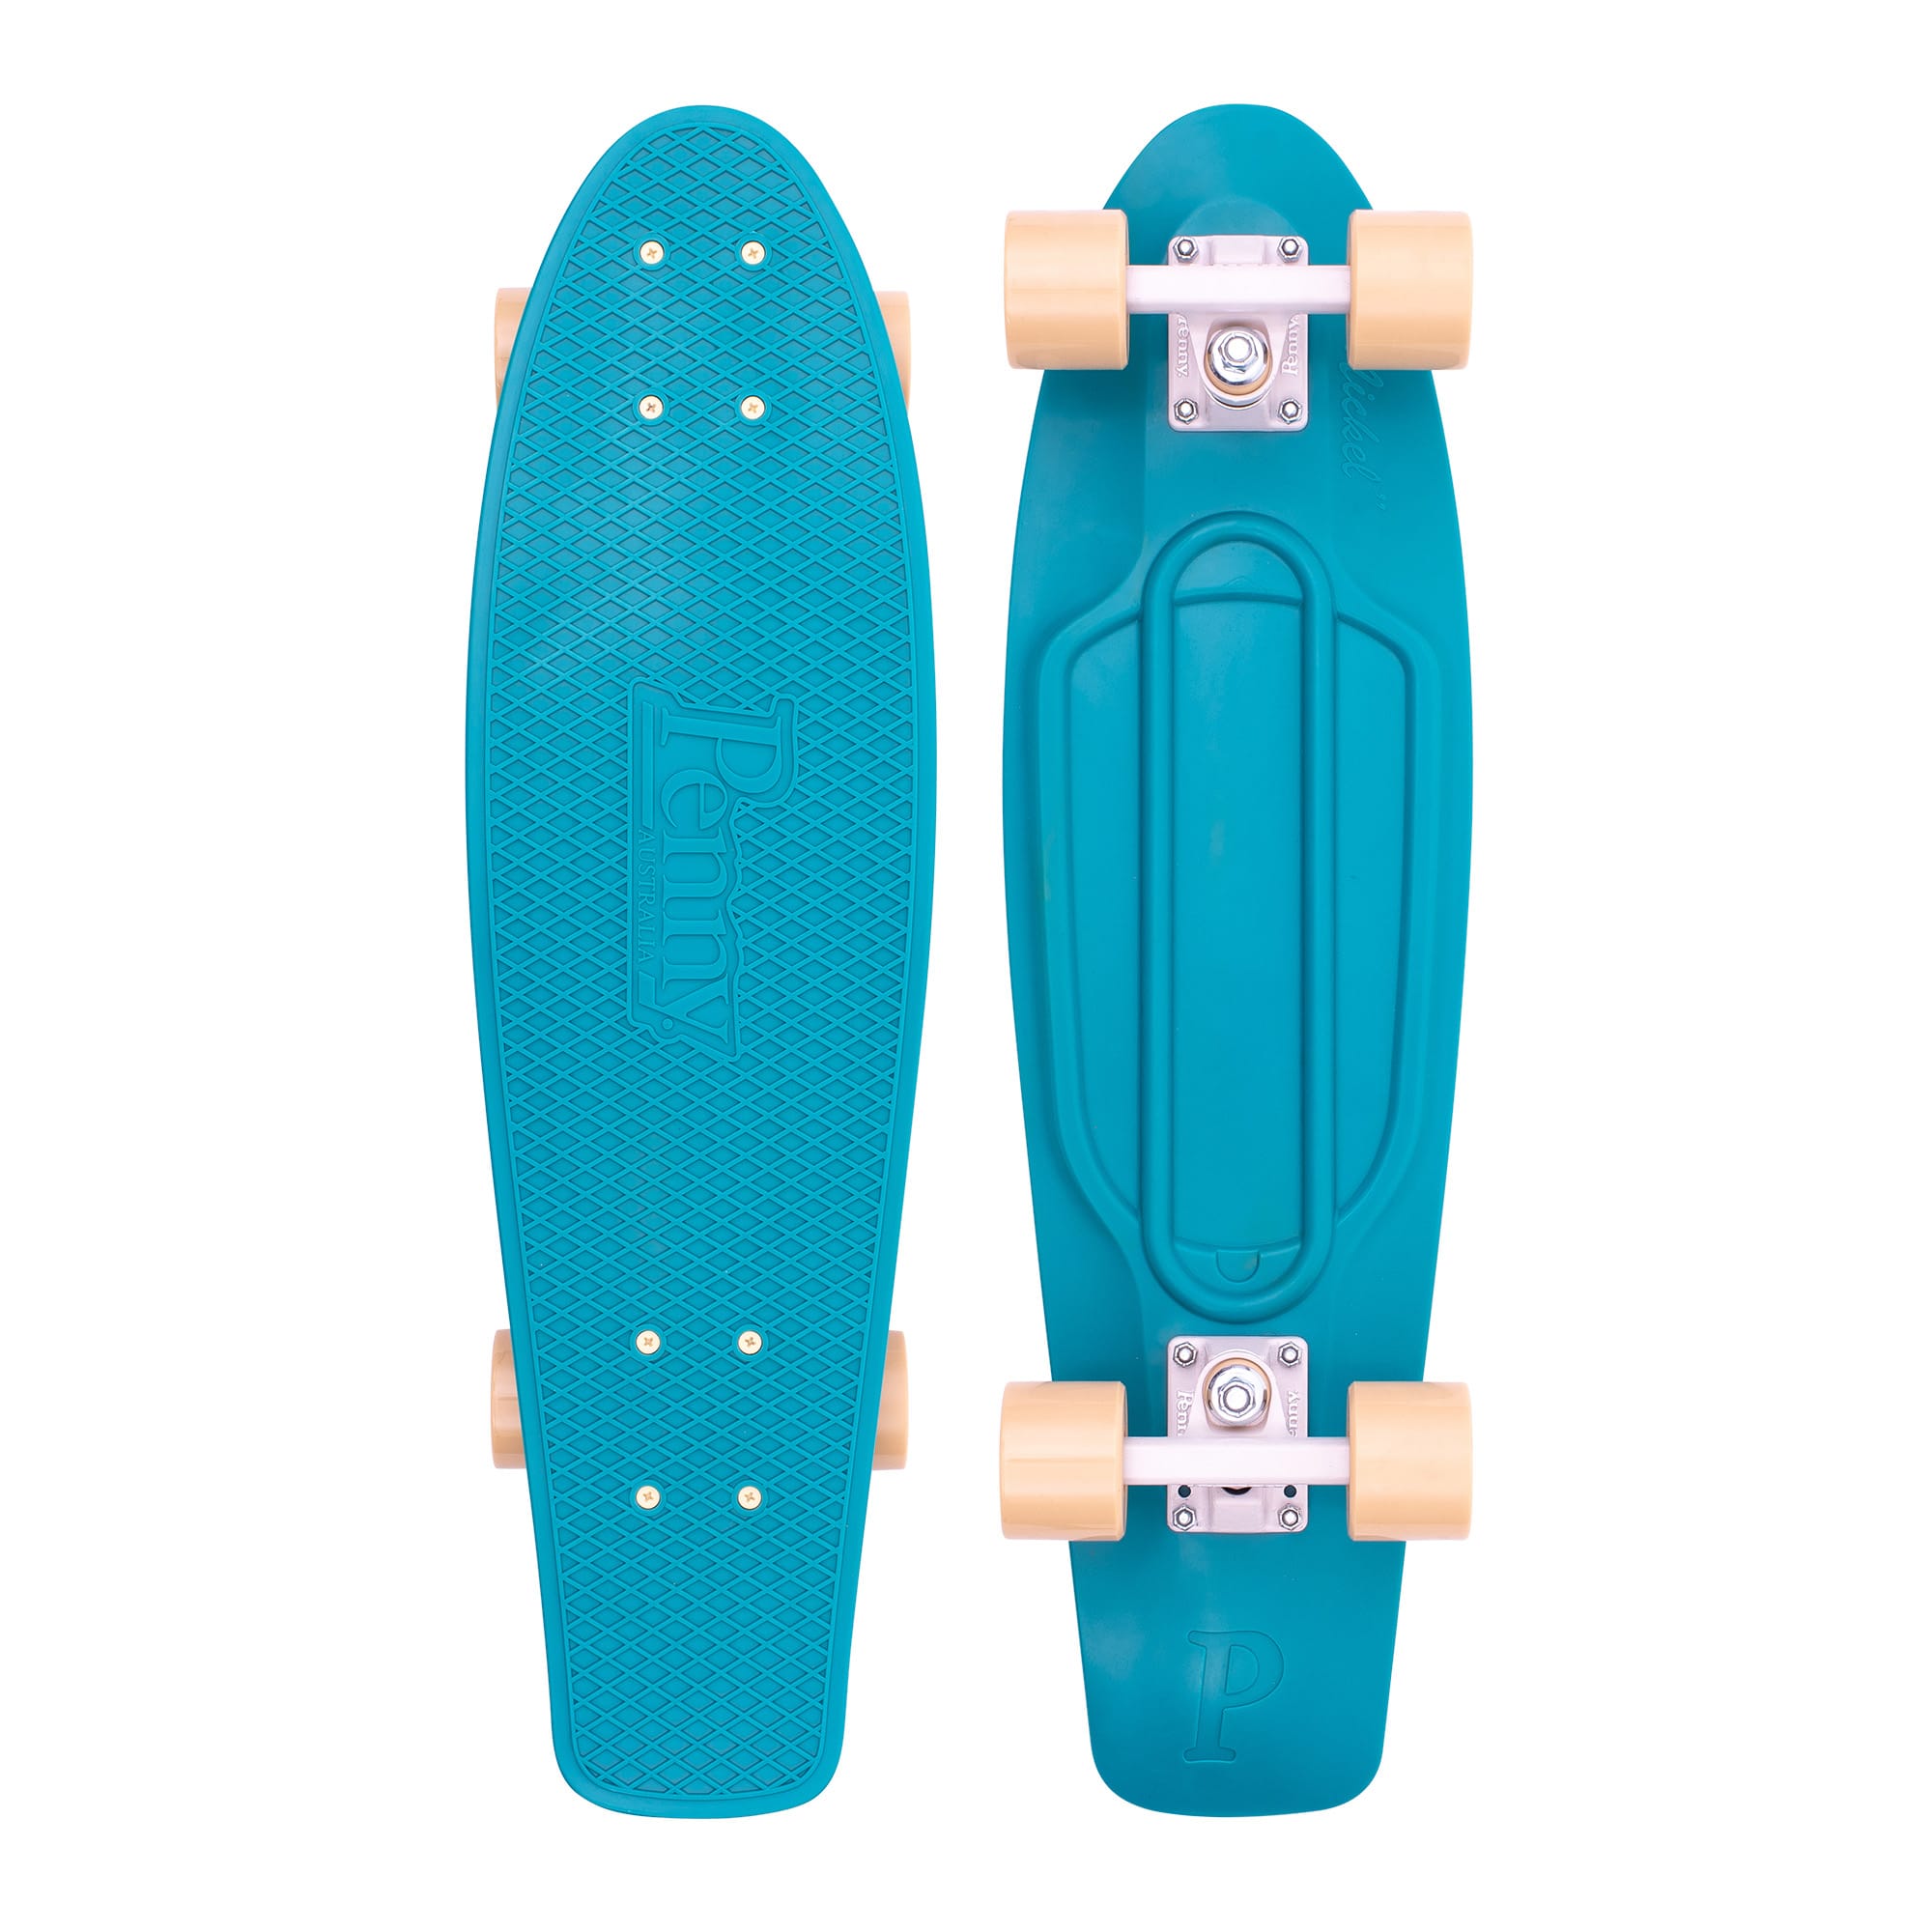 Mist 27" Complete Cruiser Skateboard by Skateboards | Penny Board